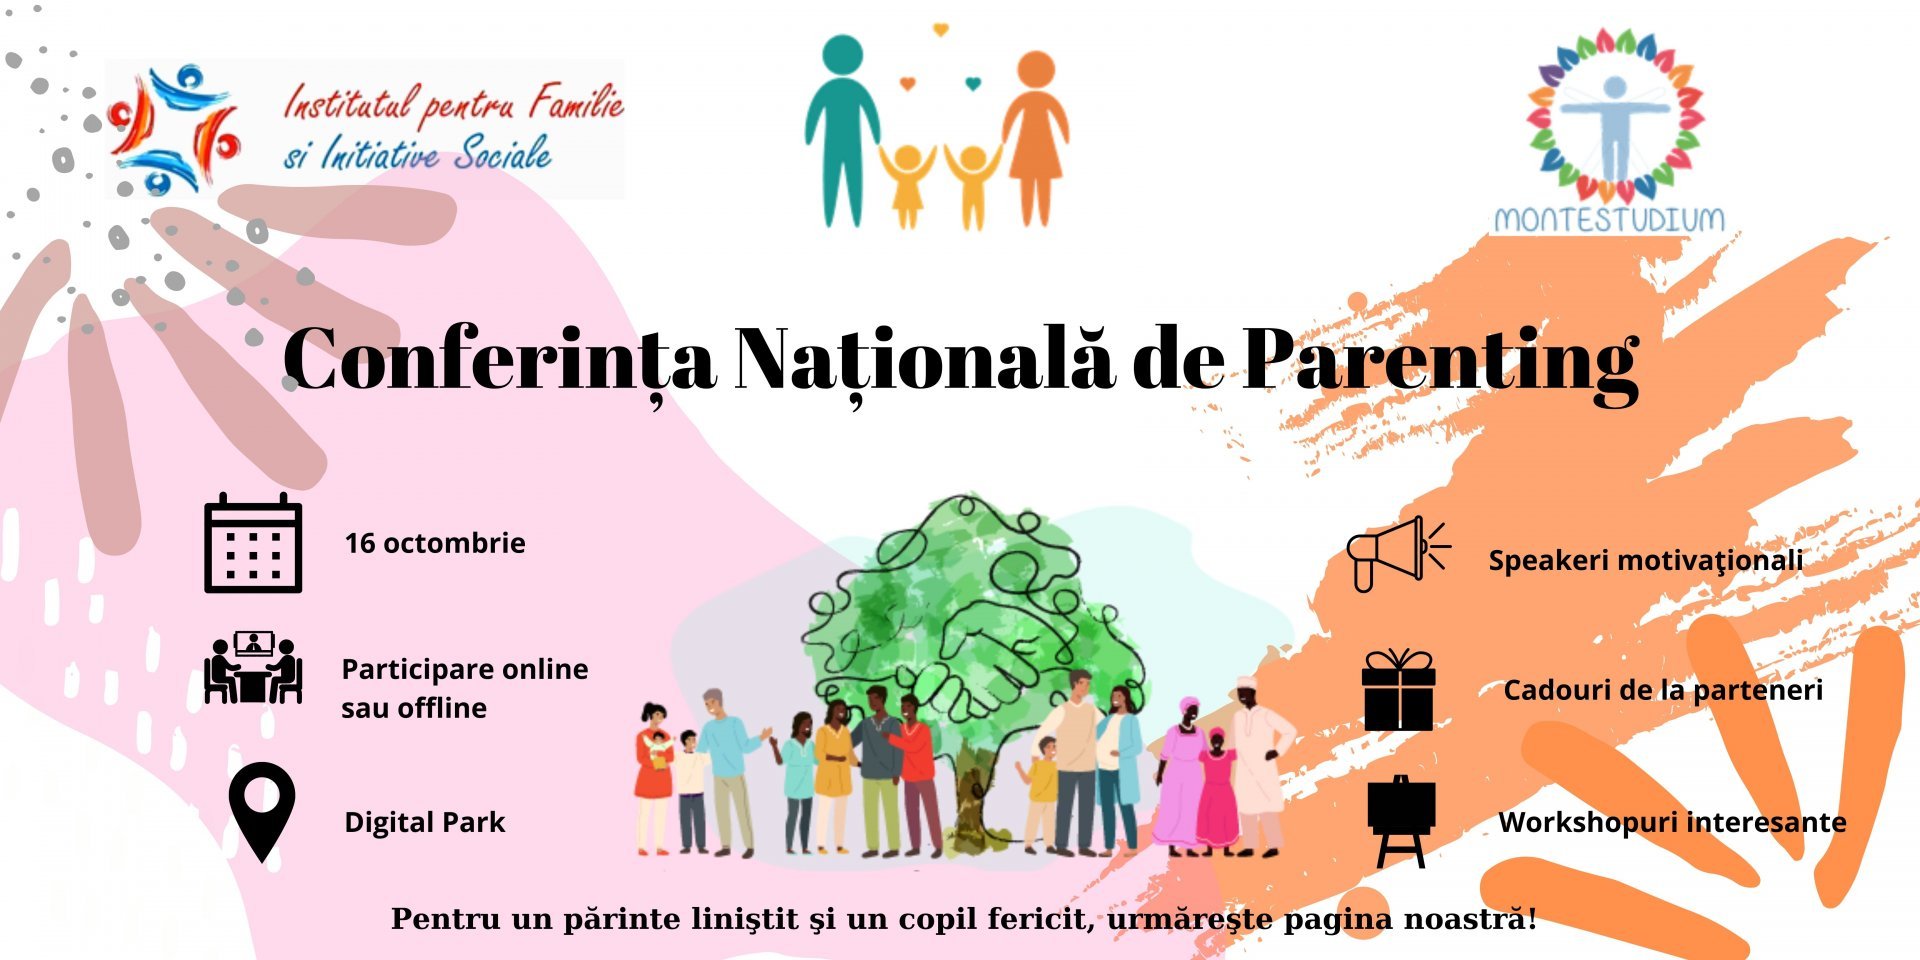 Conferinţa Naţională de Parenting